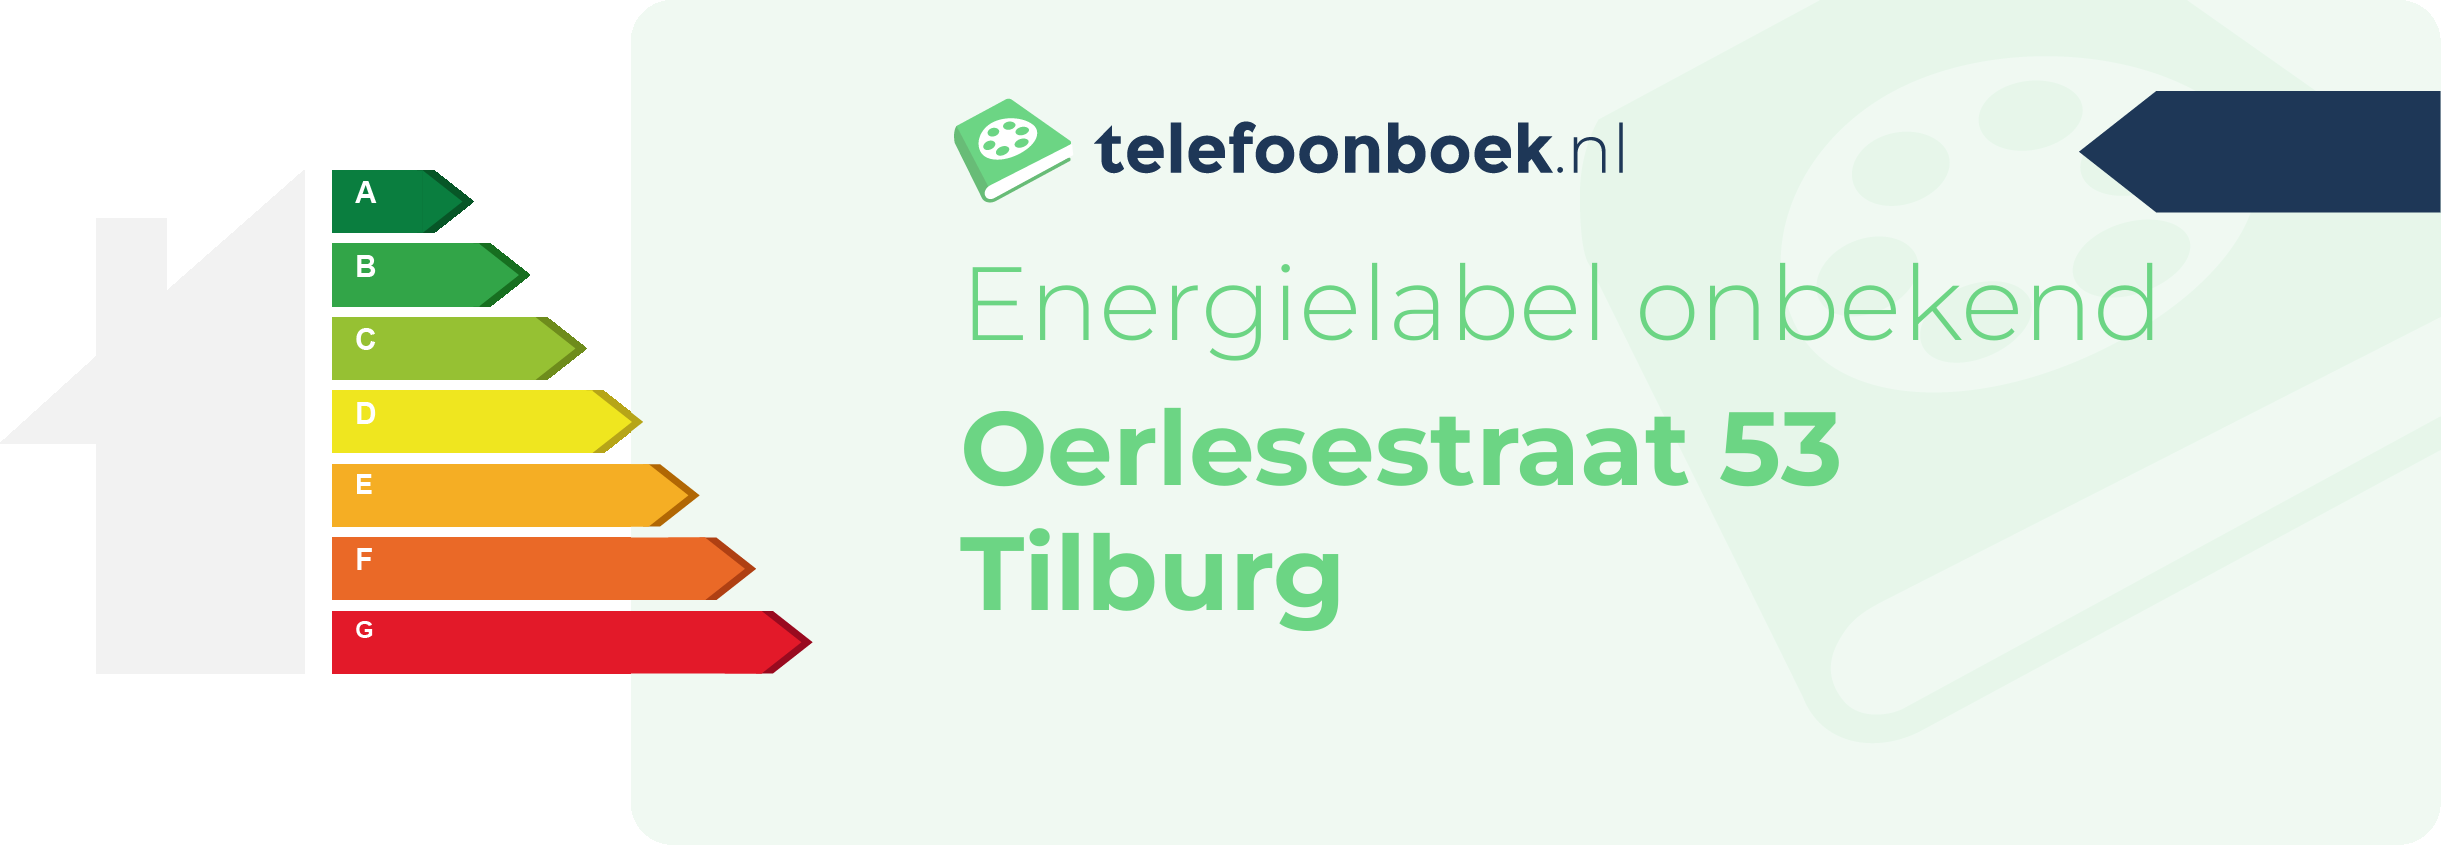 Energielabel Oerlesestraat 53 Tilburg